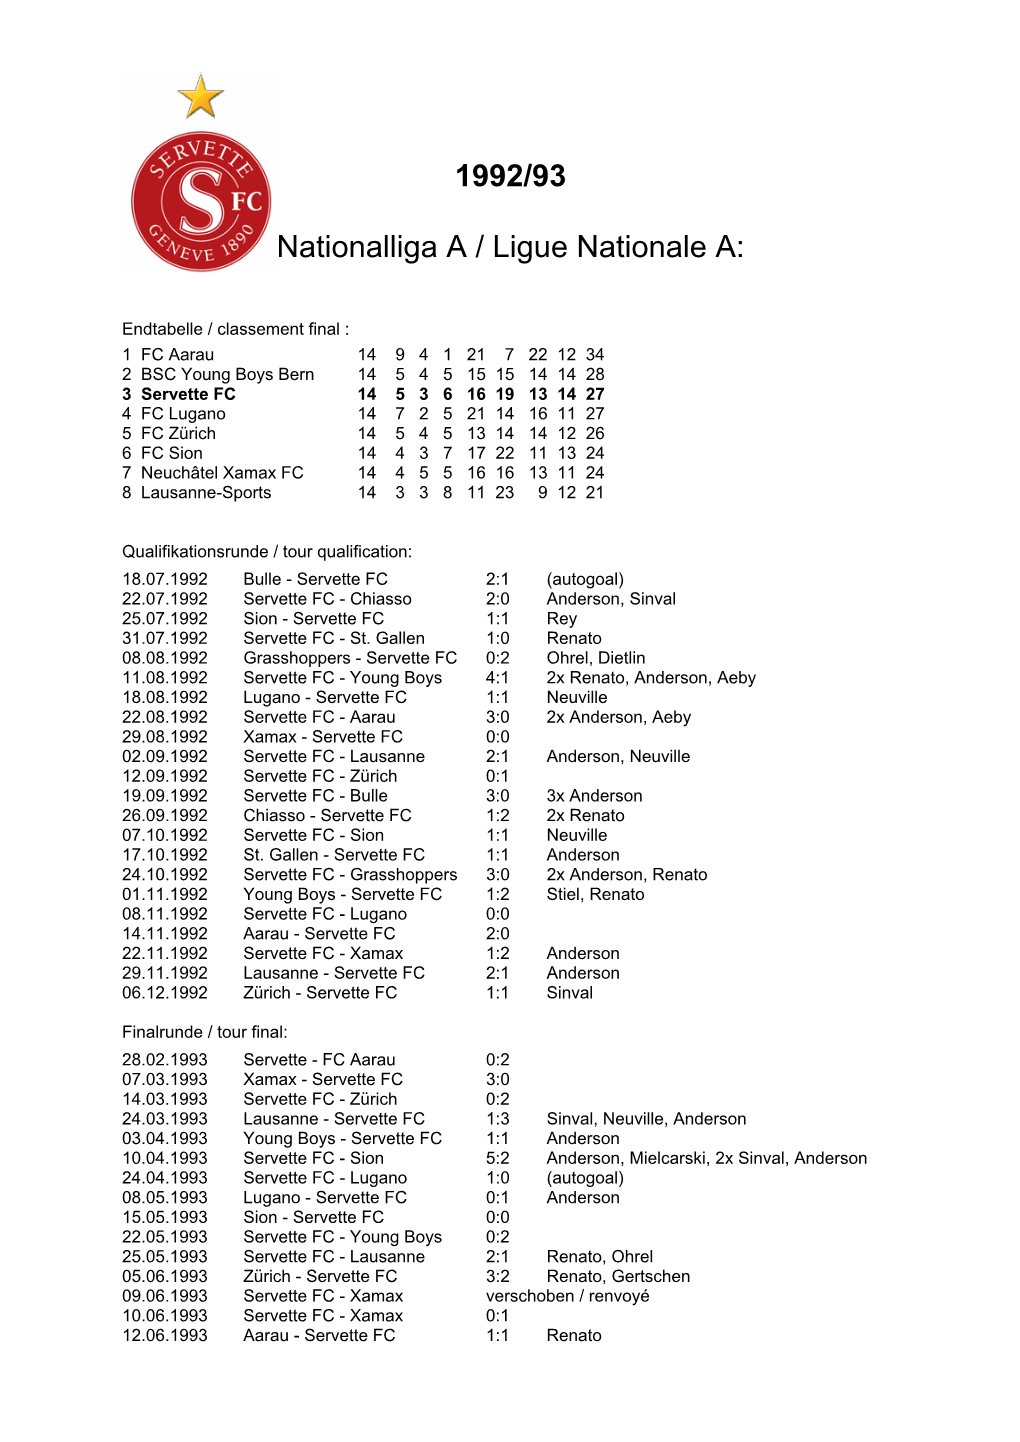 1992/93 Nationalliga a / Ligue Nationale A